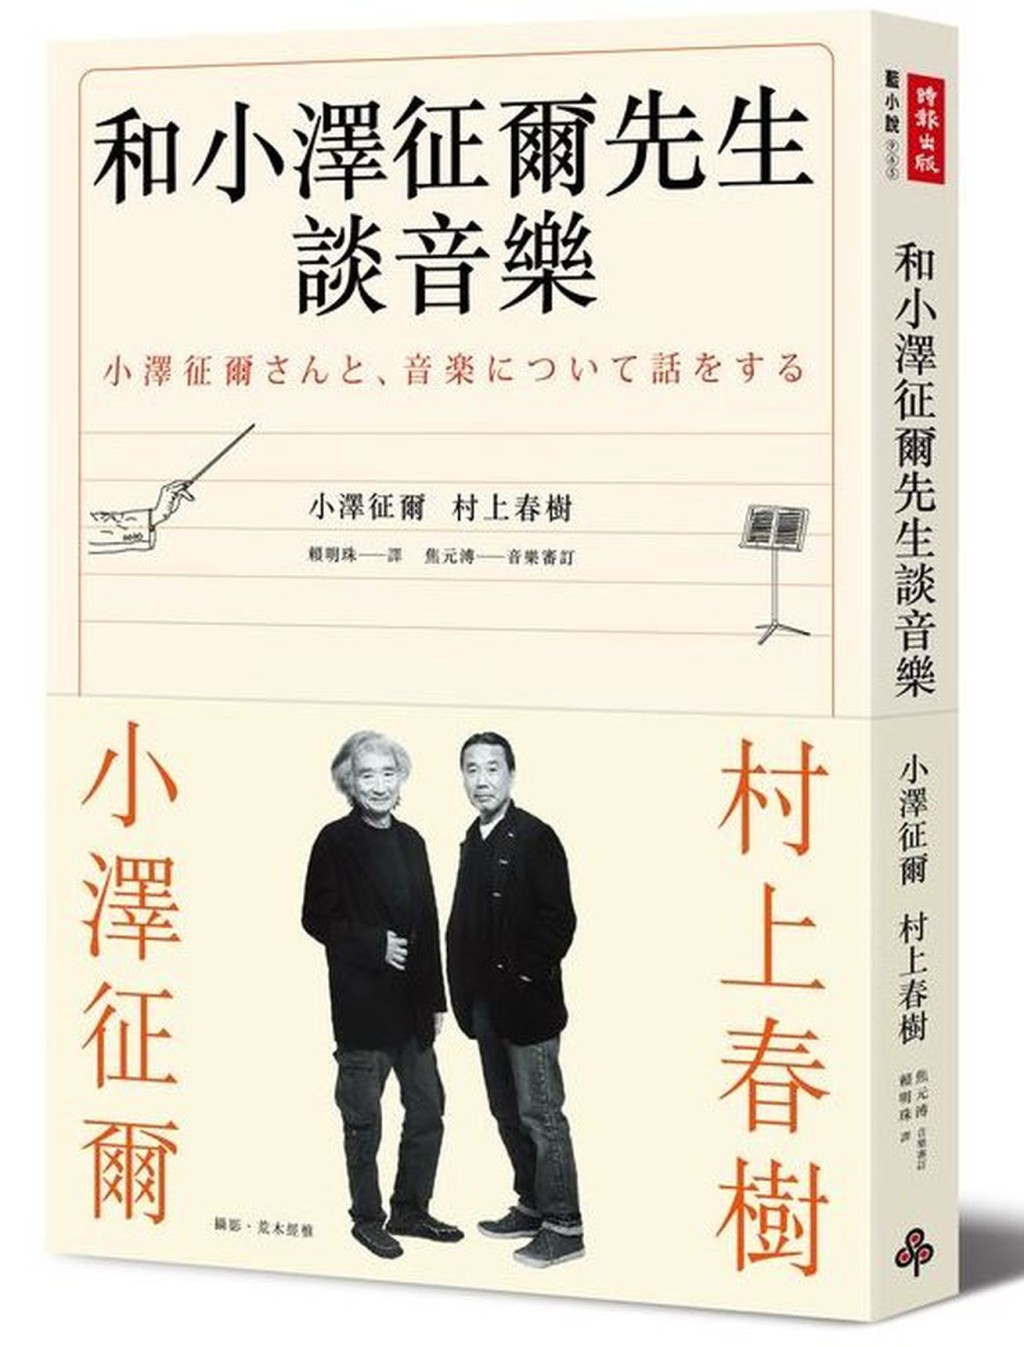 《和小澤征爾先生談音樂》收錄了村上春樹與日本著名指揮家小澤征爾圍繞音樂的對談。